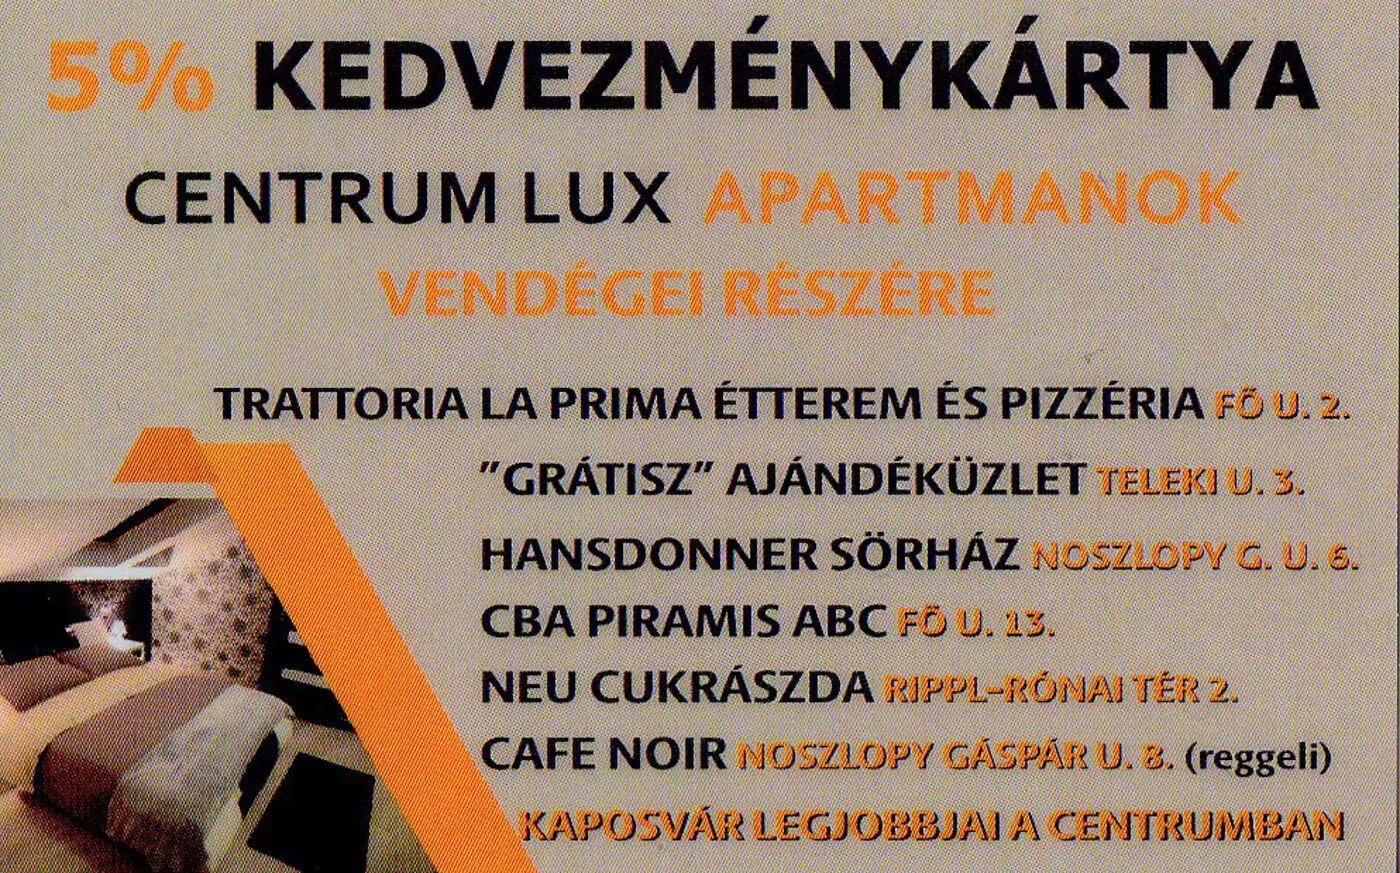 Centrum Lux 2 Apartmanok Kaposvár 006